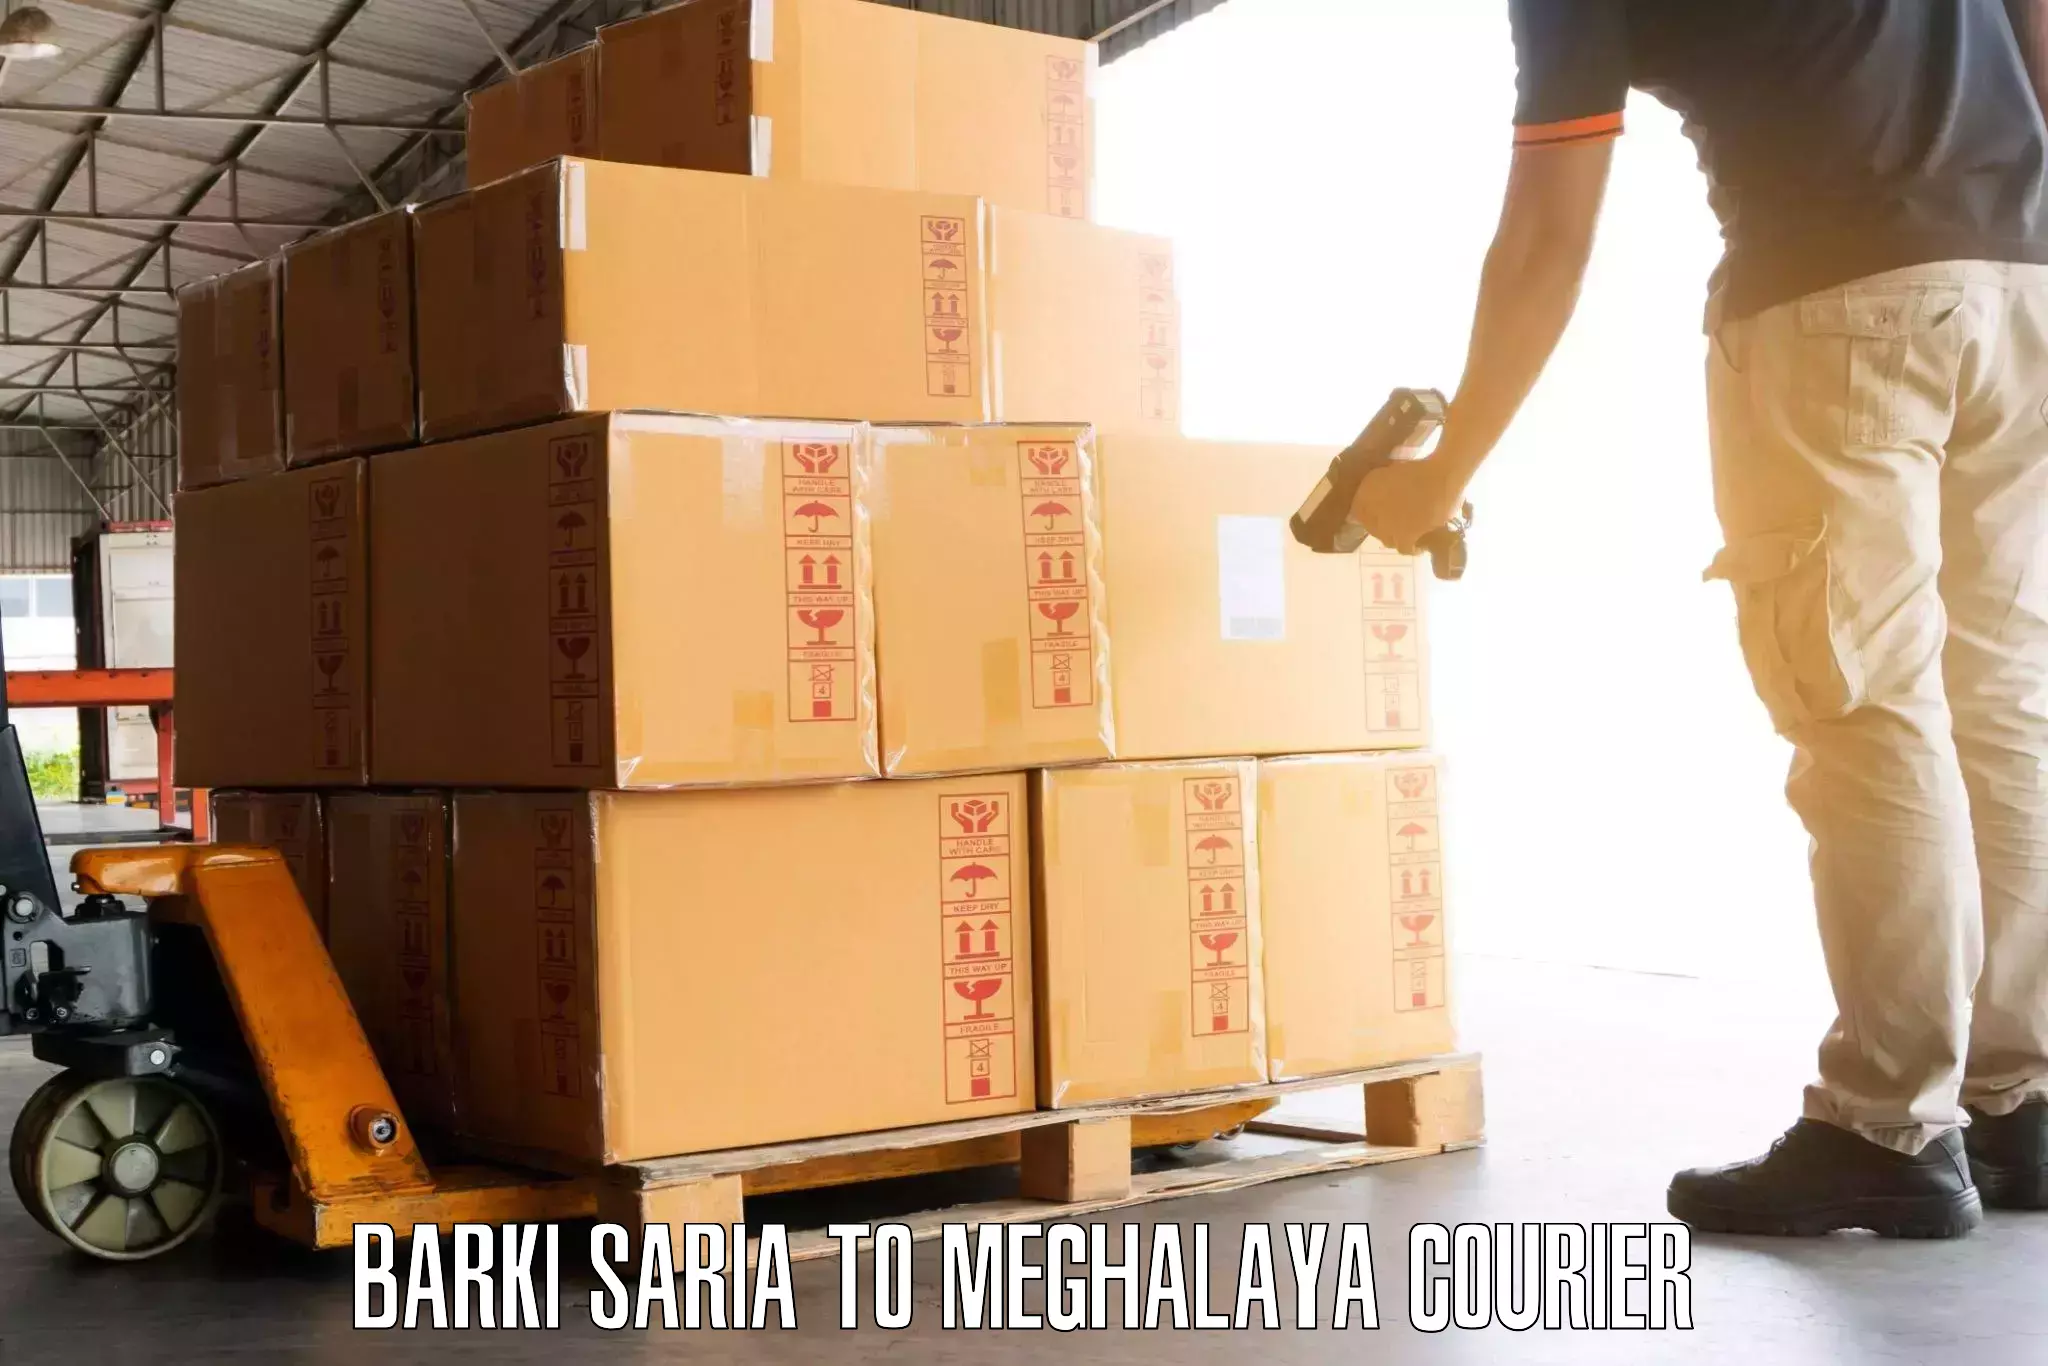 Baggage transport network in Barki Saria to Meghalaya